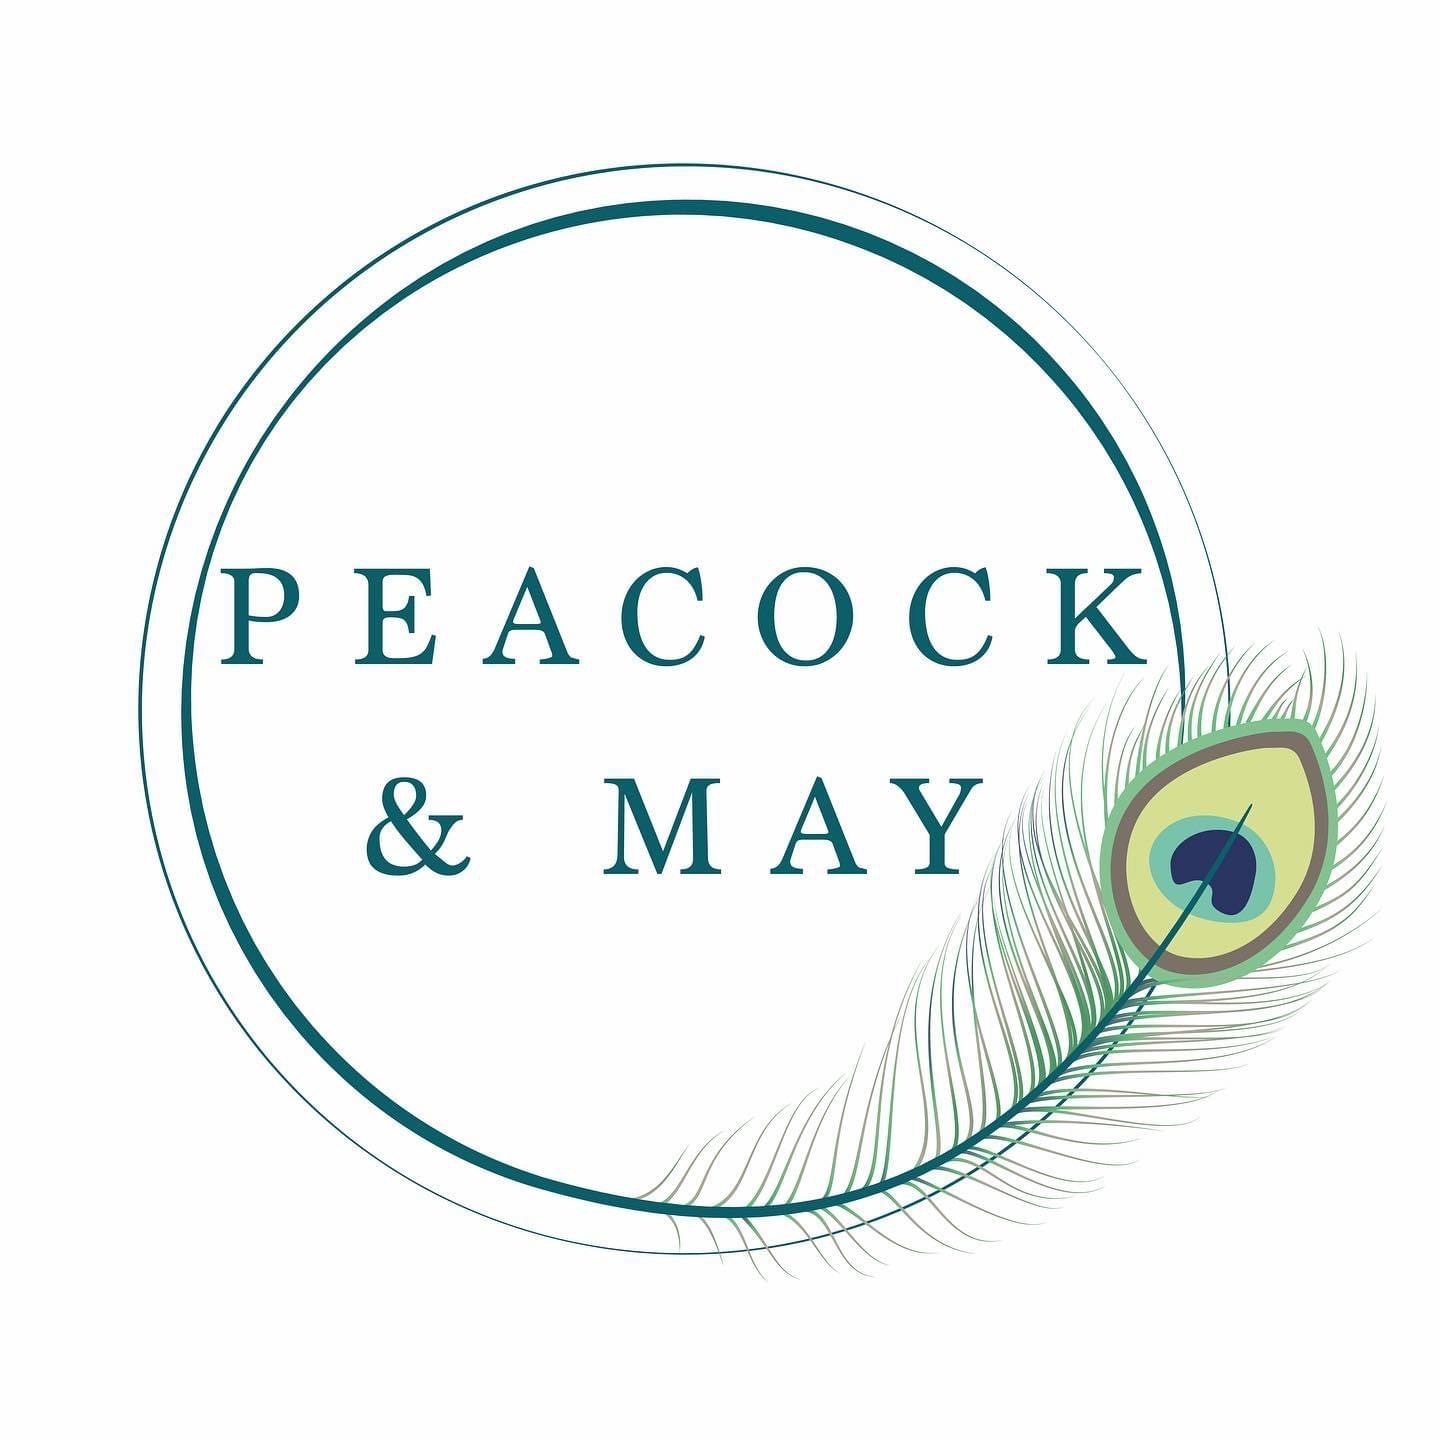 Peacock & May